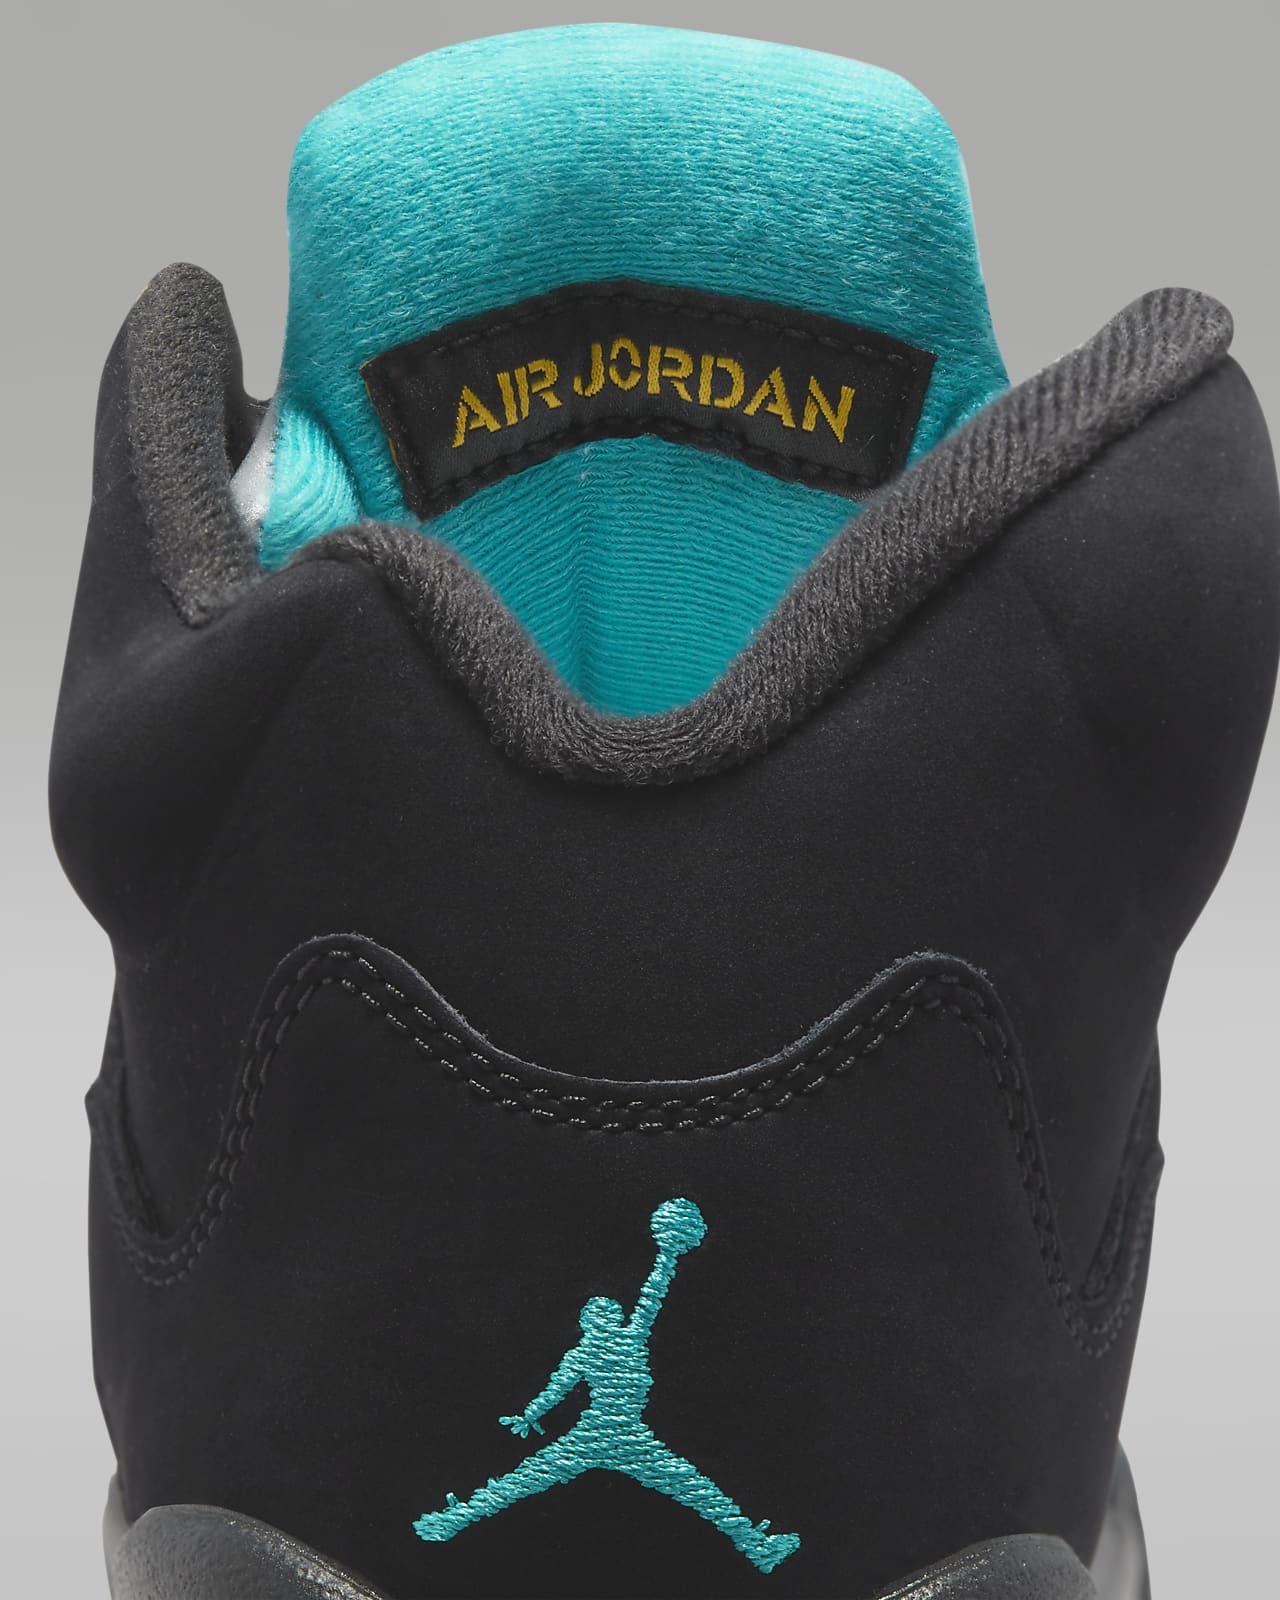 Air Jordan 5 Retro Big Kids' Shoes.